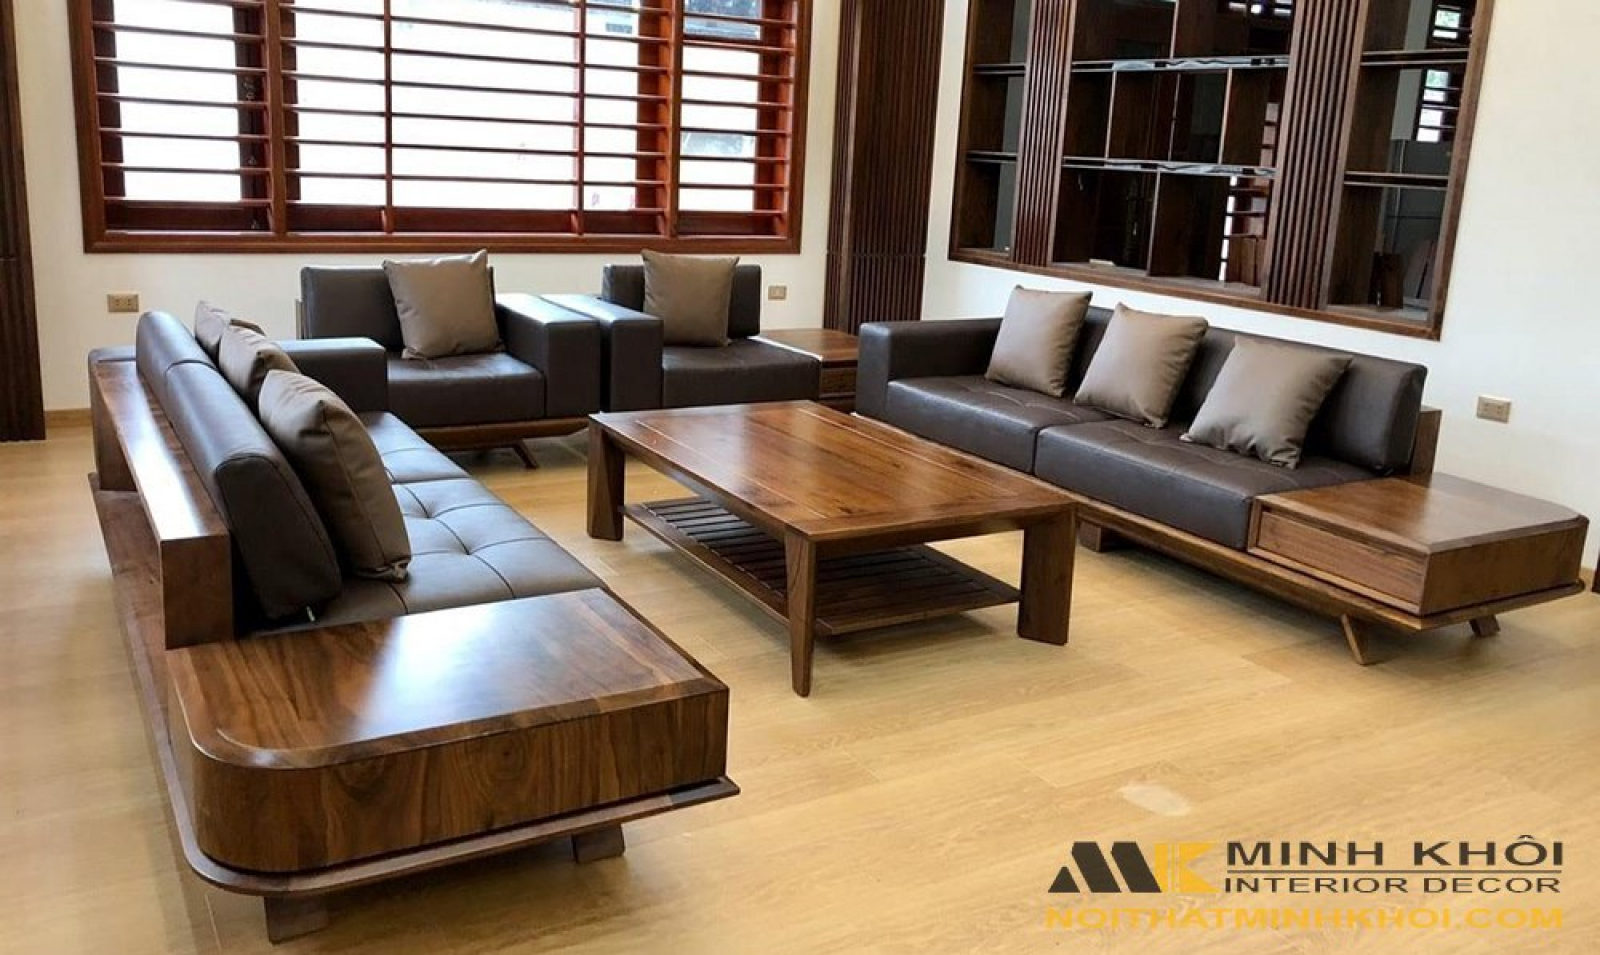 Ghế sofa gỗ đơn giản hiện đại là sự pha trộn hoàn hảo giữa những thiết kế đơn giản và chất liệu gỗ. Với tông màu ấm áp và kiểu dáng tối giản, Ghế sofa gỗ đơn giản hiện đại là lựa chọn thích hợp cho những ai muốn trang trí không gian sống của mình với vẻ đẹp thuần khiết và hiện đại.